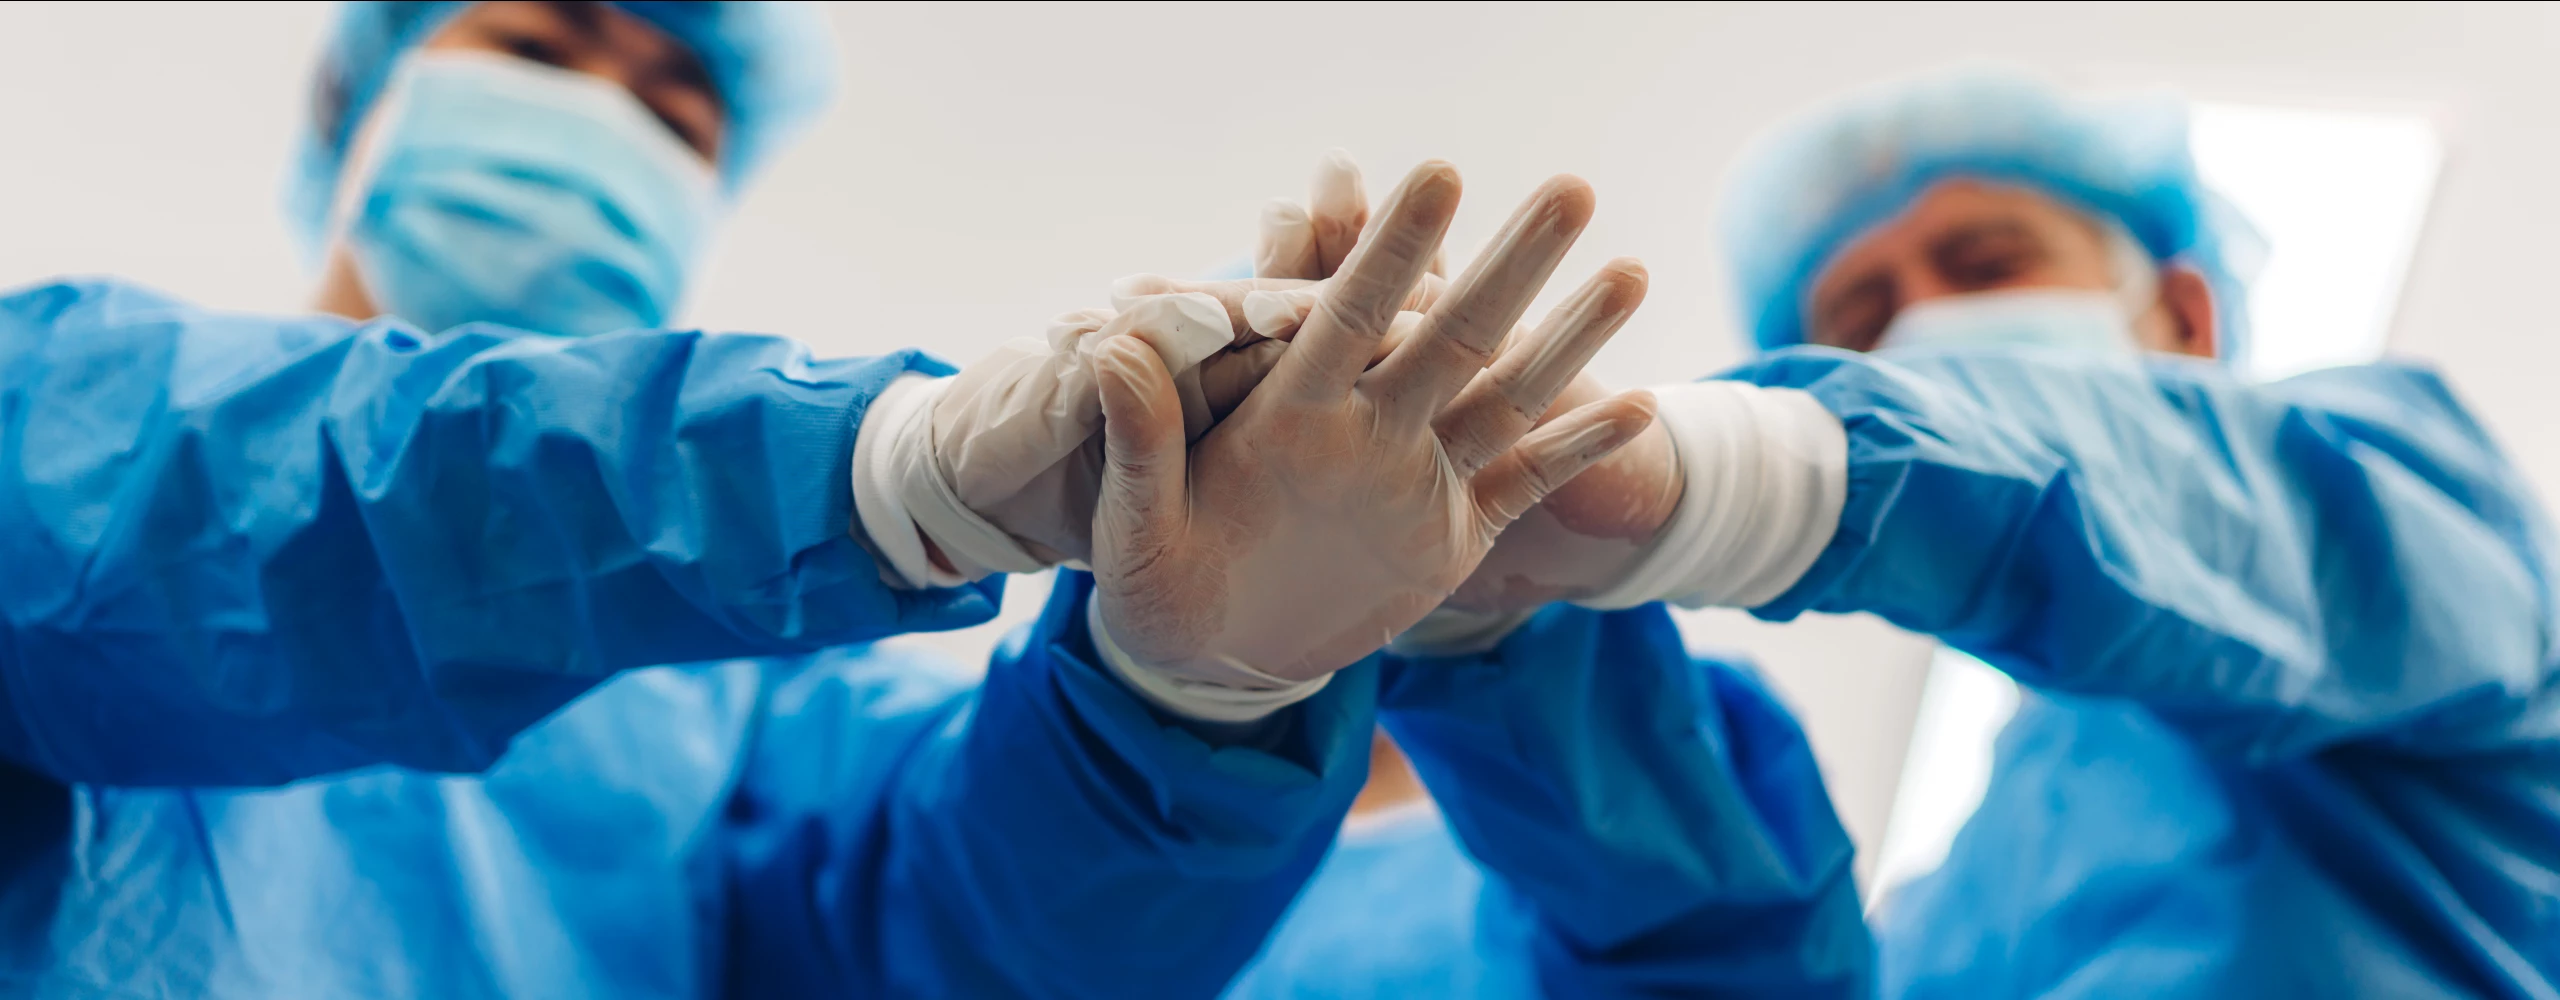 Eine Froschperspektive bei der zwei Ärzte mit Schutzanzügen und Masken die Hände aufeinander halten.